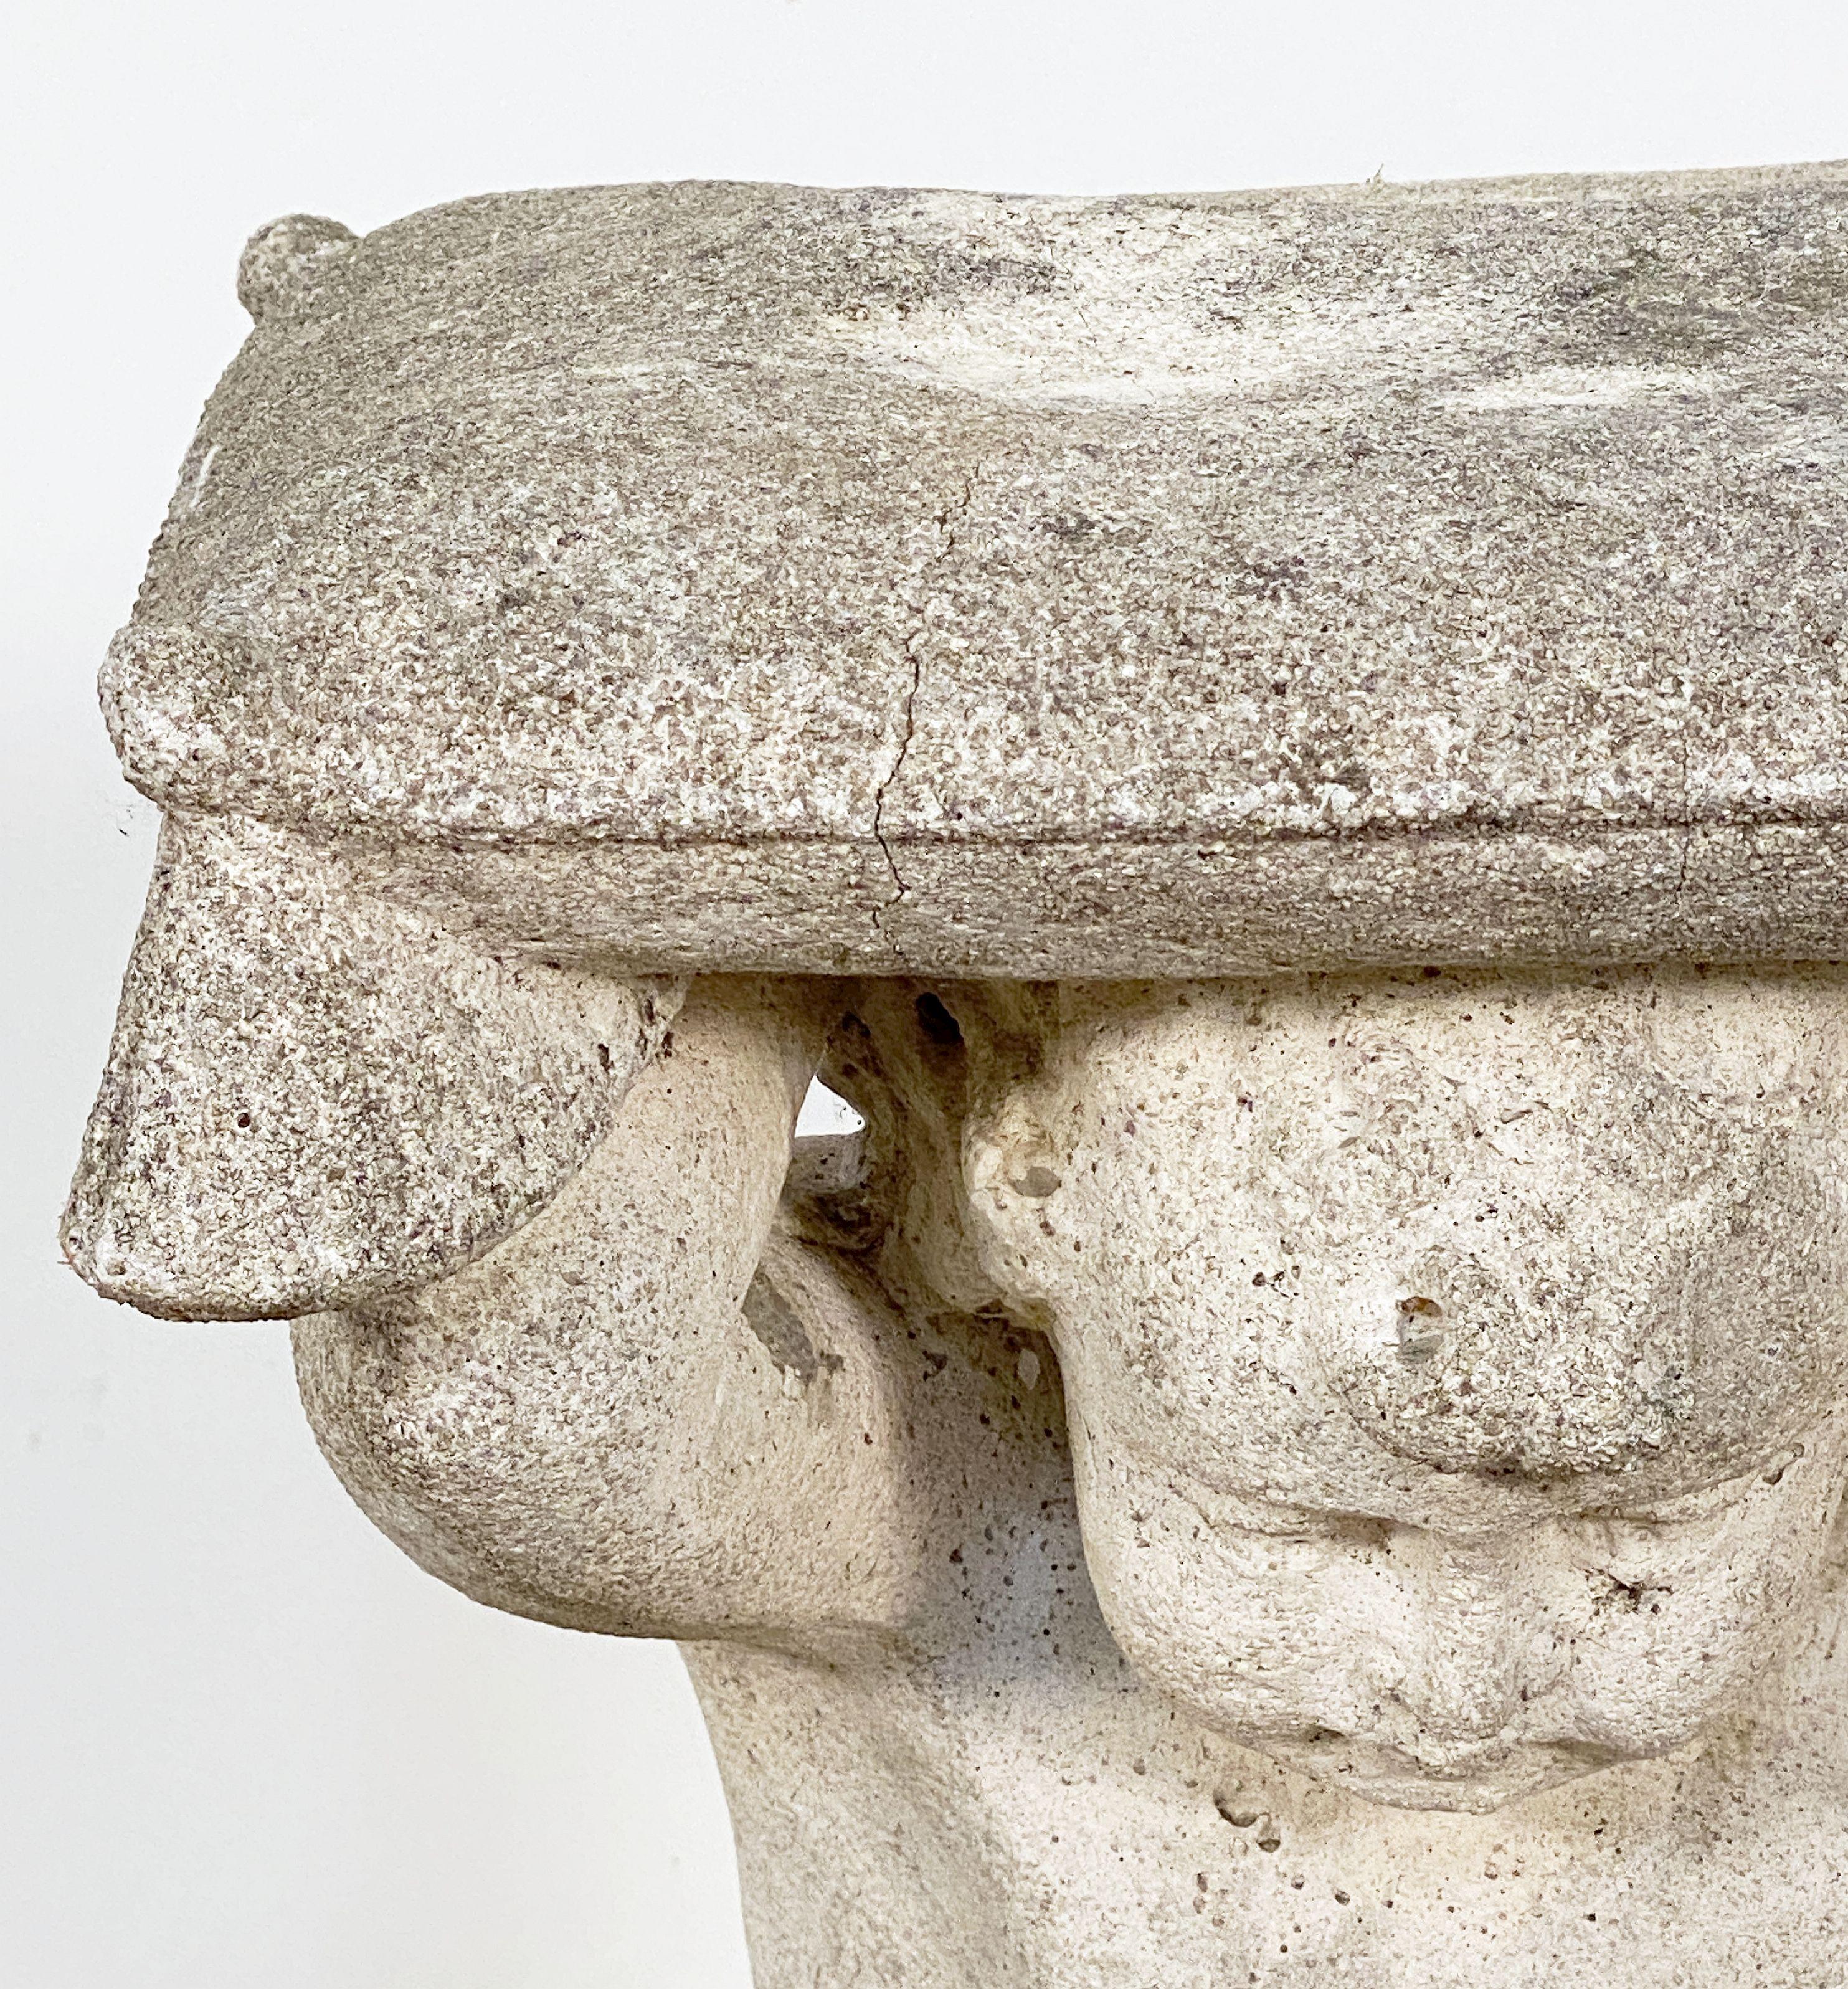 Ein feiner italienischer Gartensitz oder Grottenhocker aus Steinguss im Barockstil - mit der Skulptur eines Puttenfauns in kniender Position, der ein Kissen über seinen Kopf hält, um dem Sitzenden zu dienen.

Vier verfügbar - Einzelpreis - $1495 pro